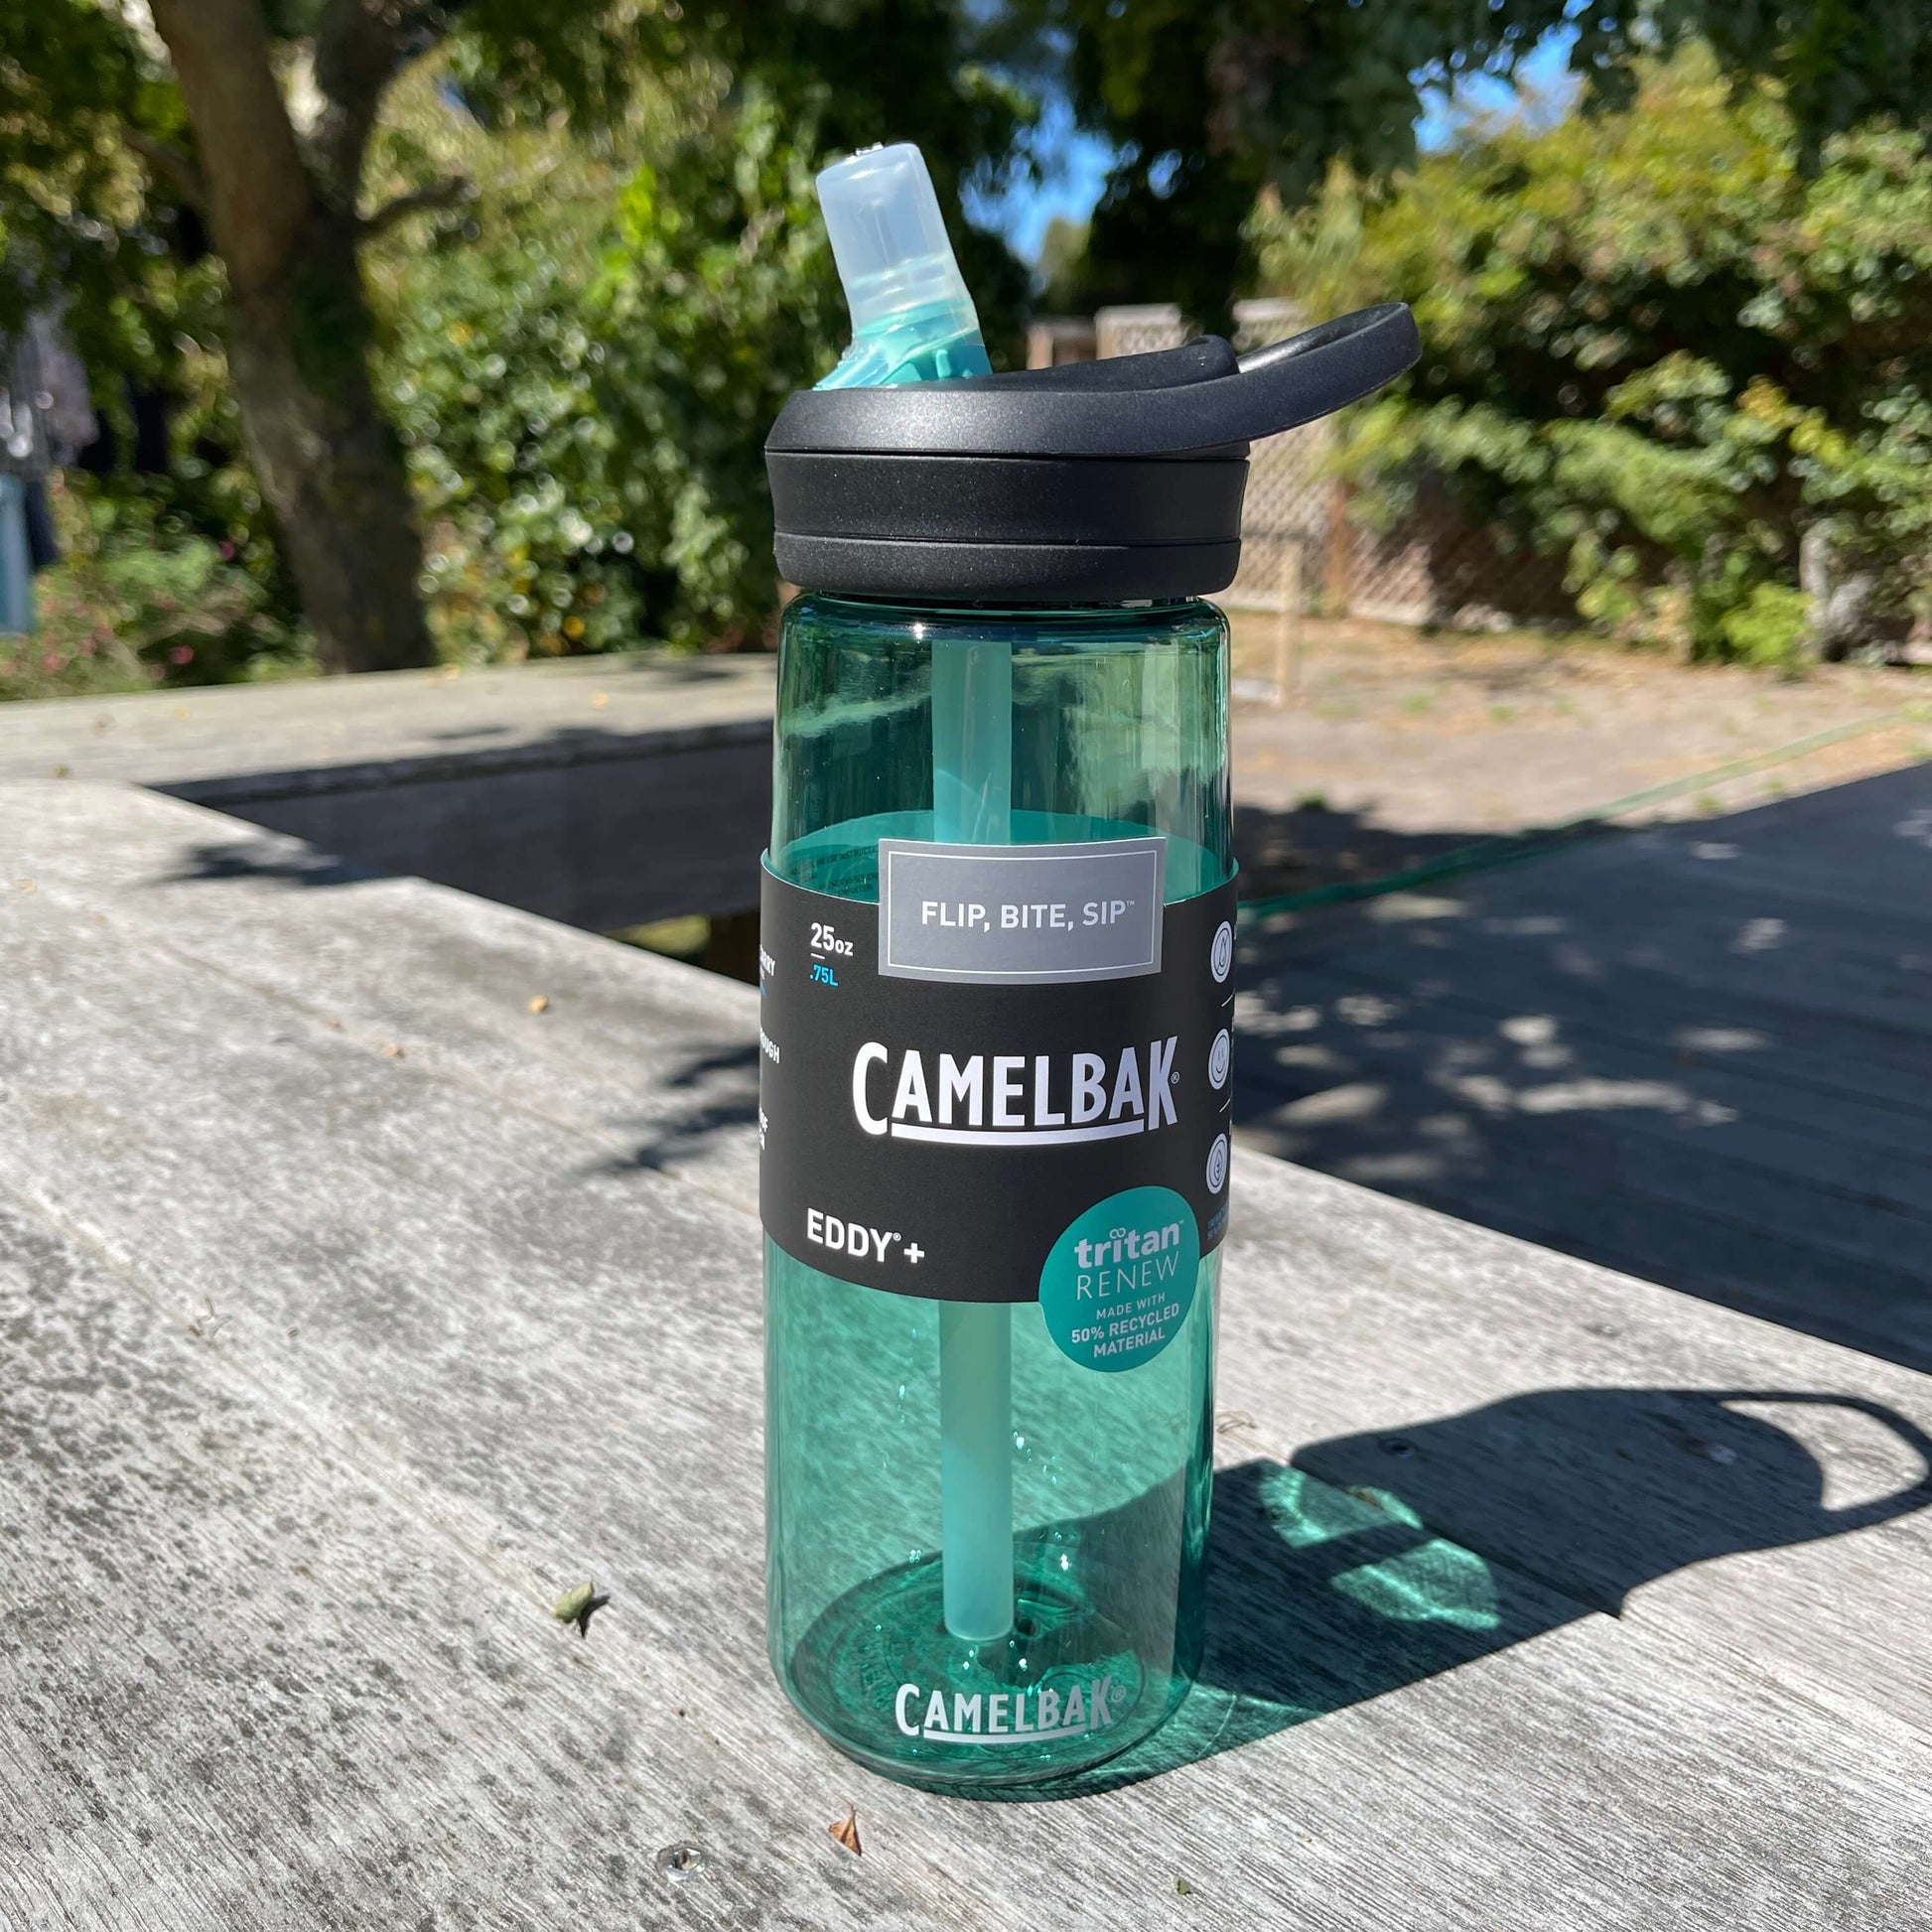 Camelbak Eddy plus drink bottle in coastal green.